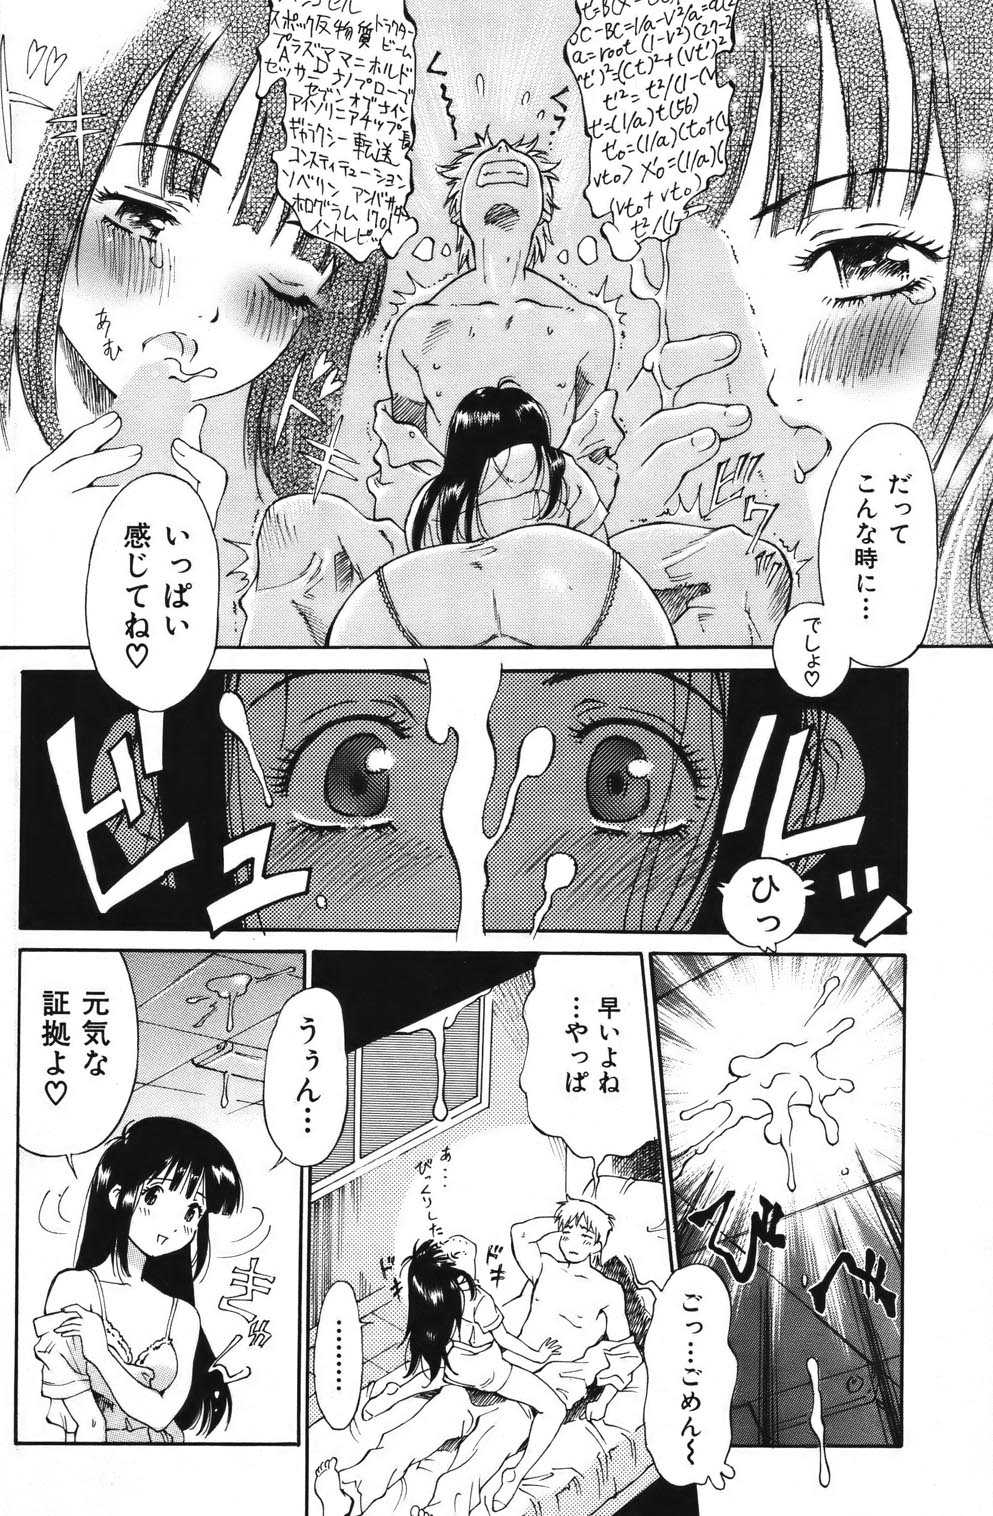 [2006.02.15]Comic Kairakuten Beast Volume 6 